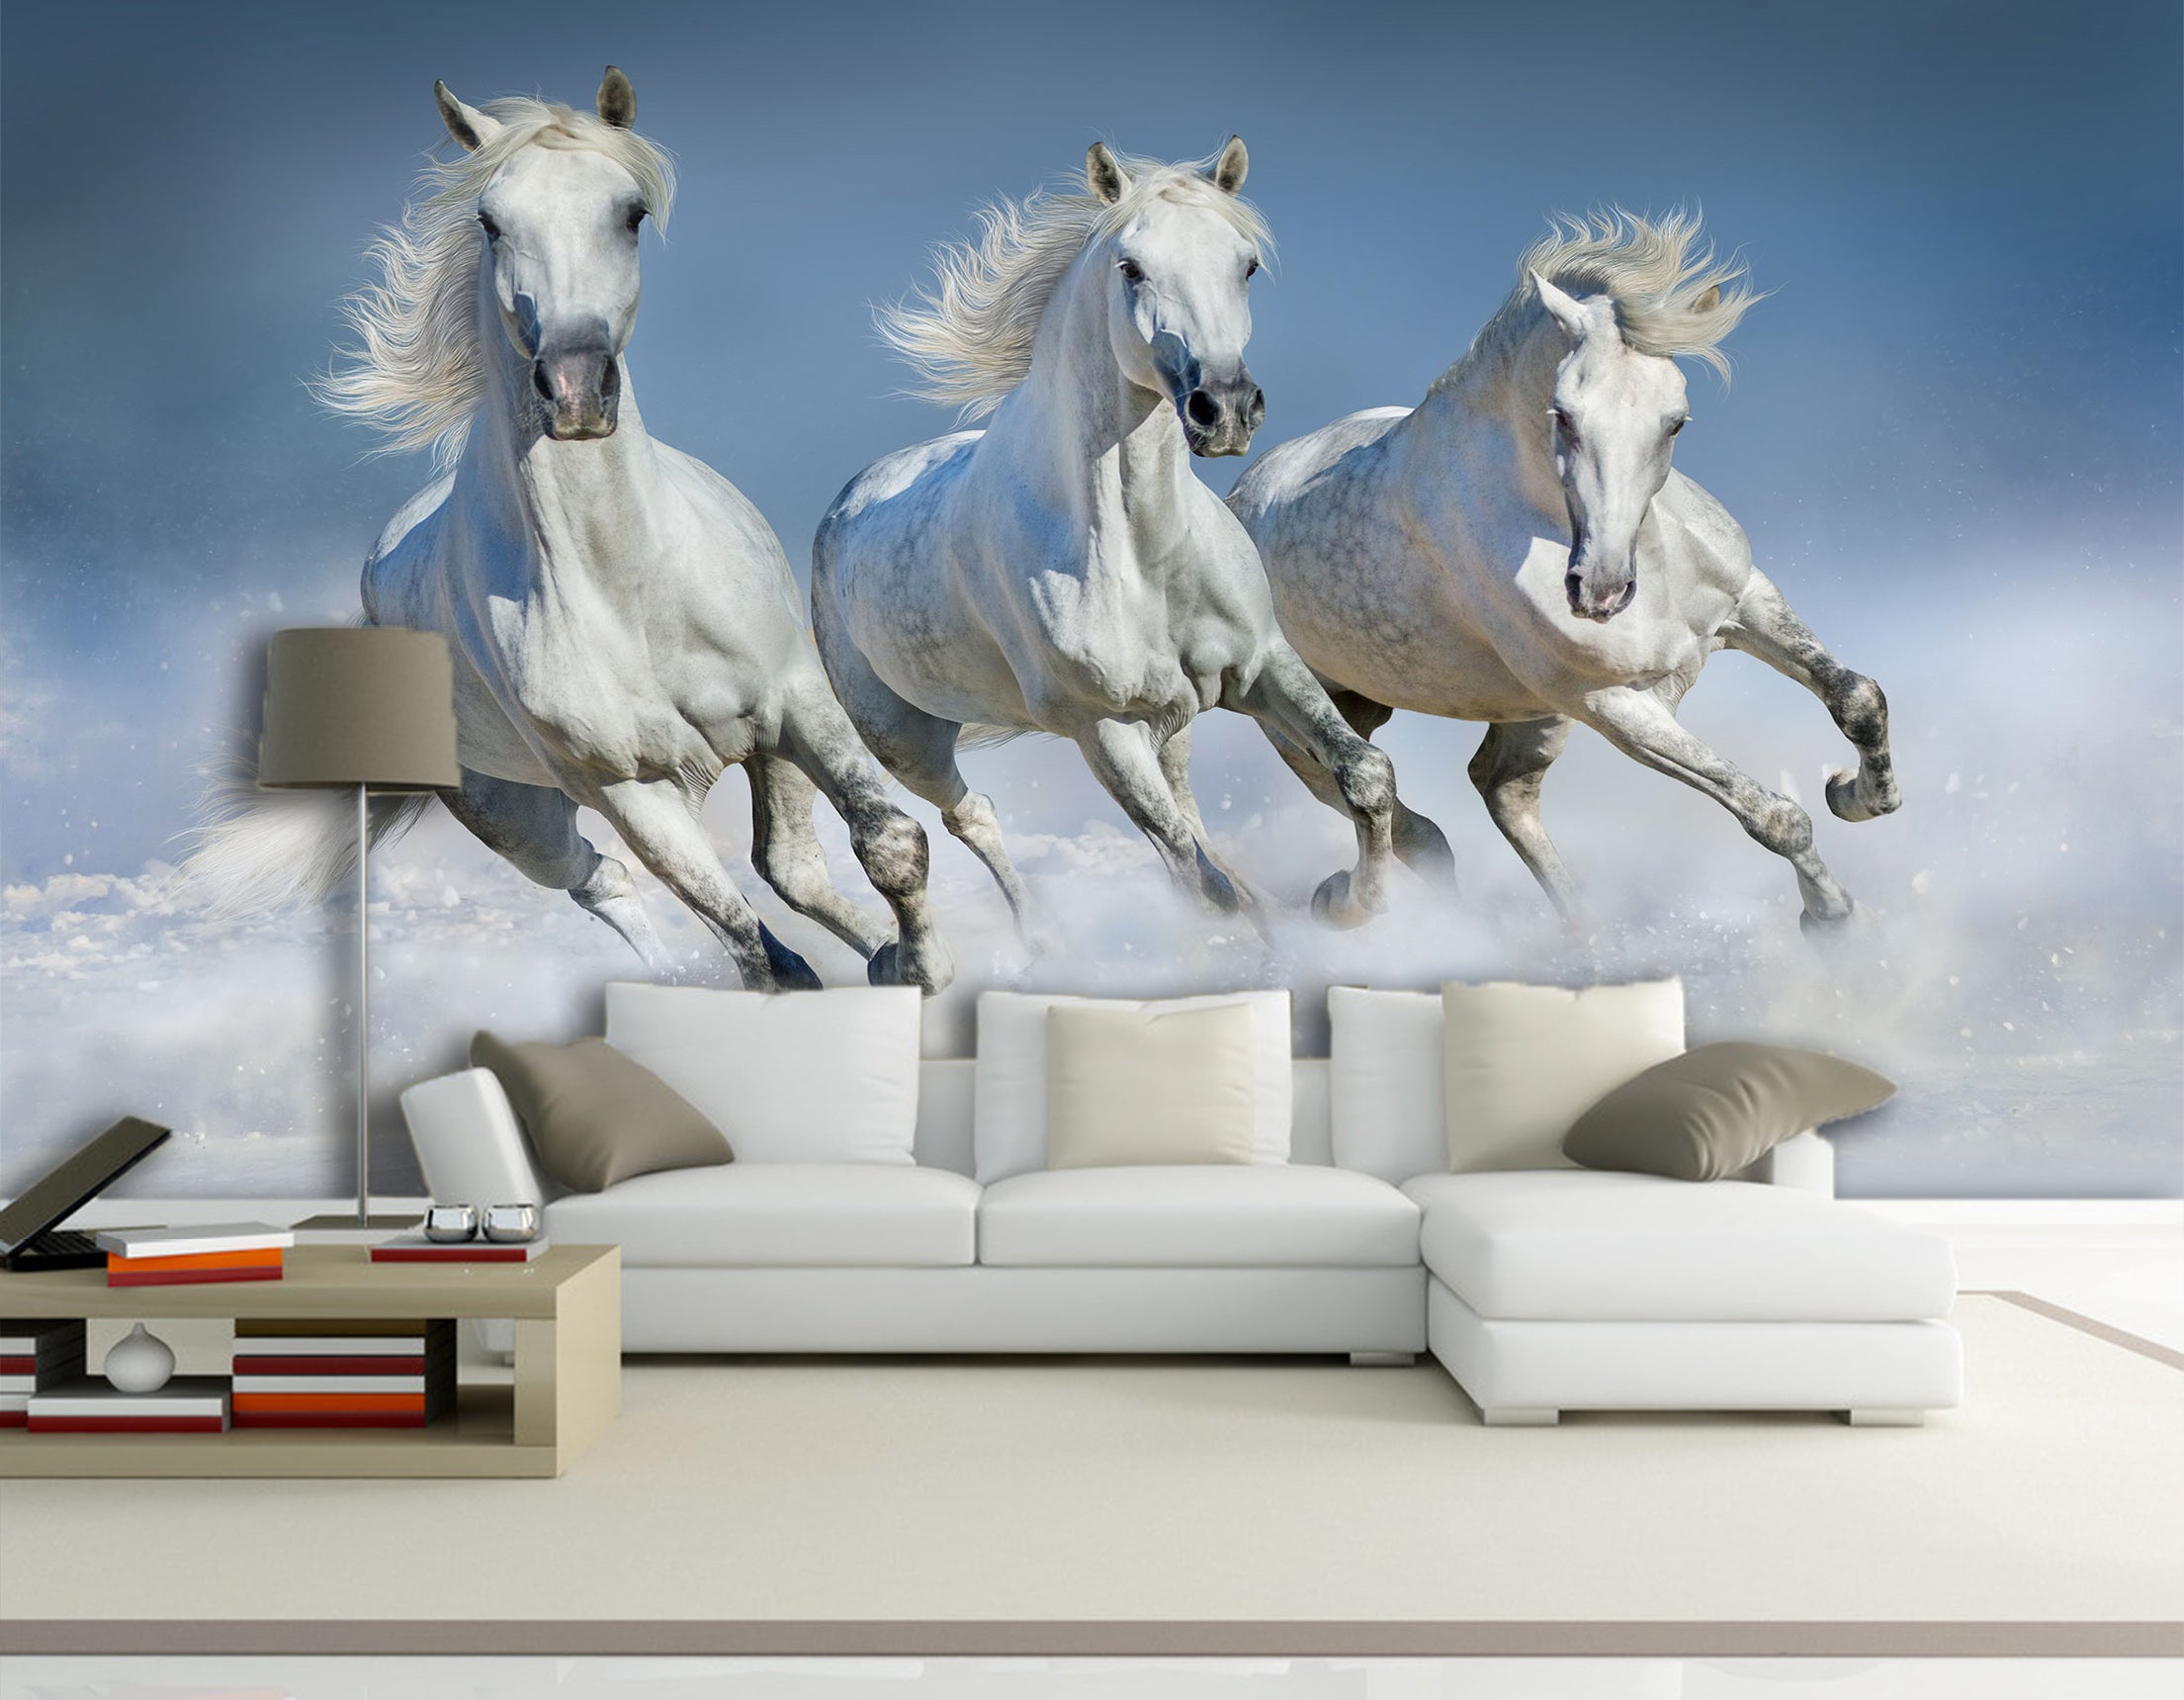 3D White Horse 1061 Wall Murals